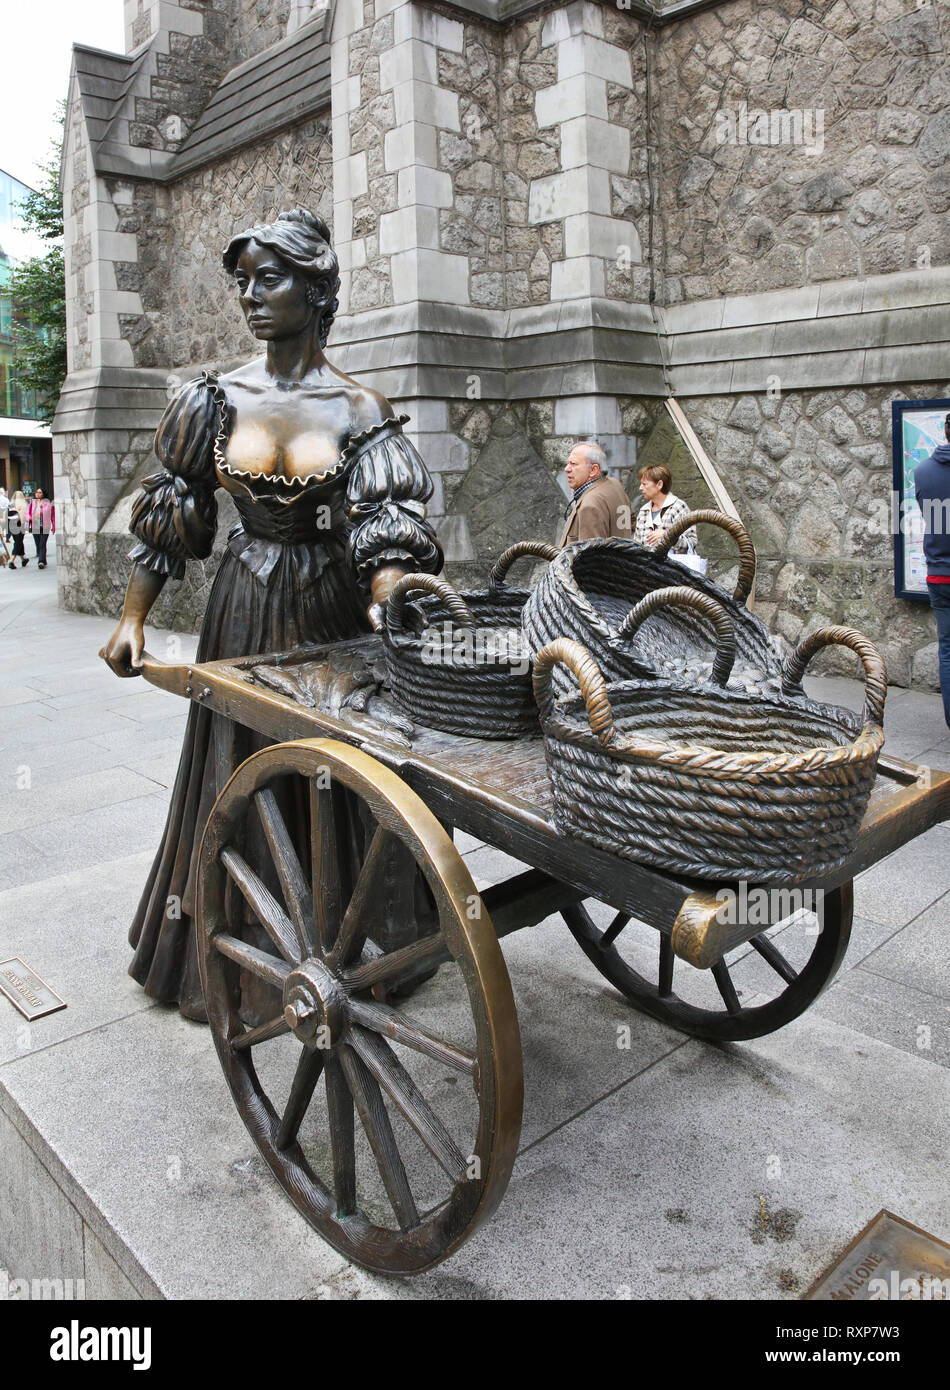 Statua di bronzo di Molly Malone progettato da Jeanne Rynhart ispirato da una canzone su un pescivendolo fictional che esercitava il suo commercio sulle strade di Dublino, Irlanda Foto Stock